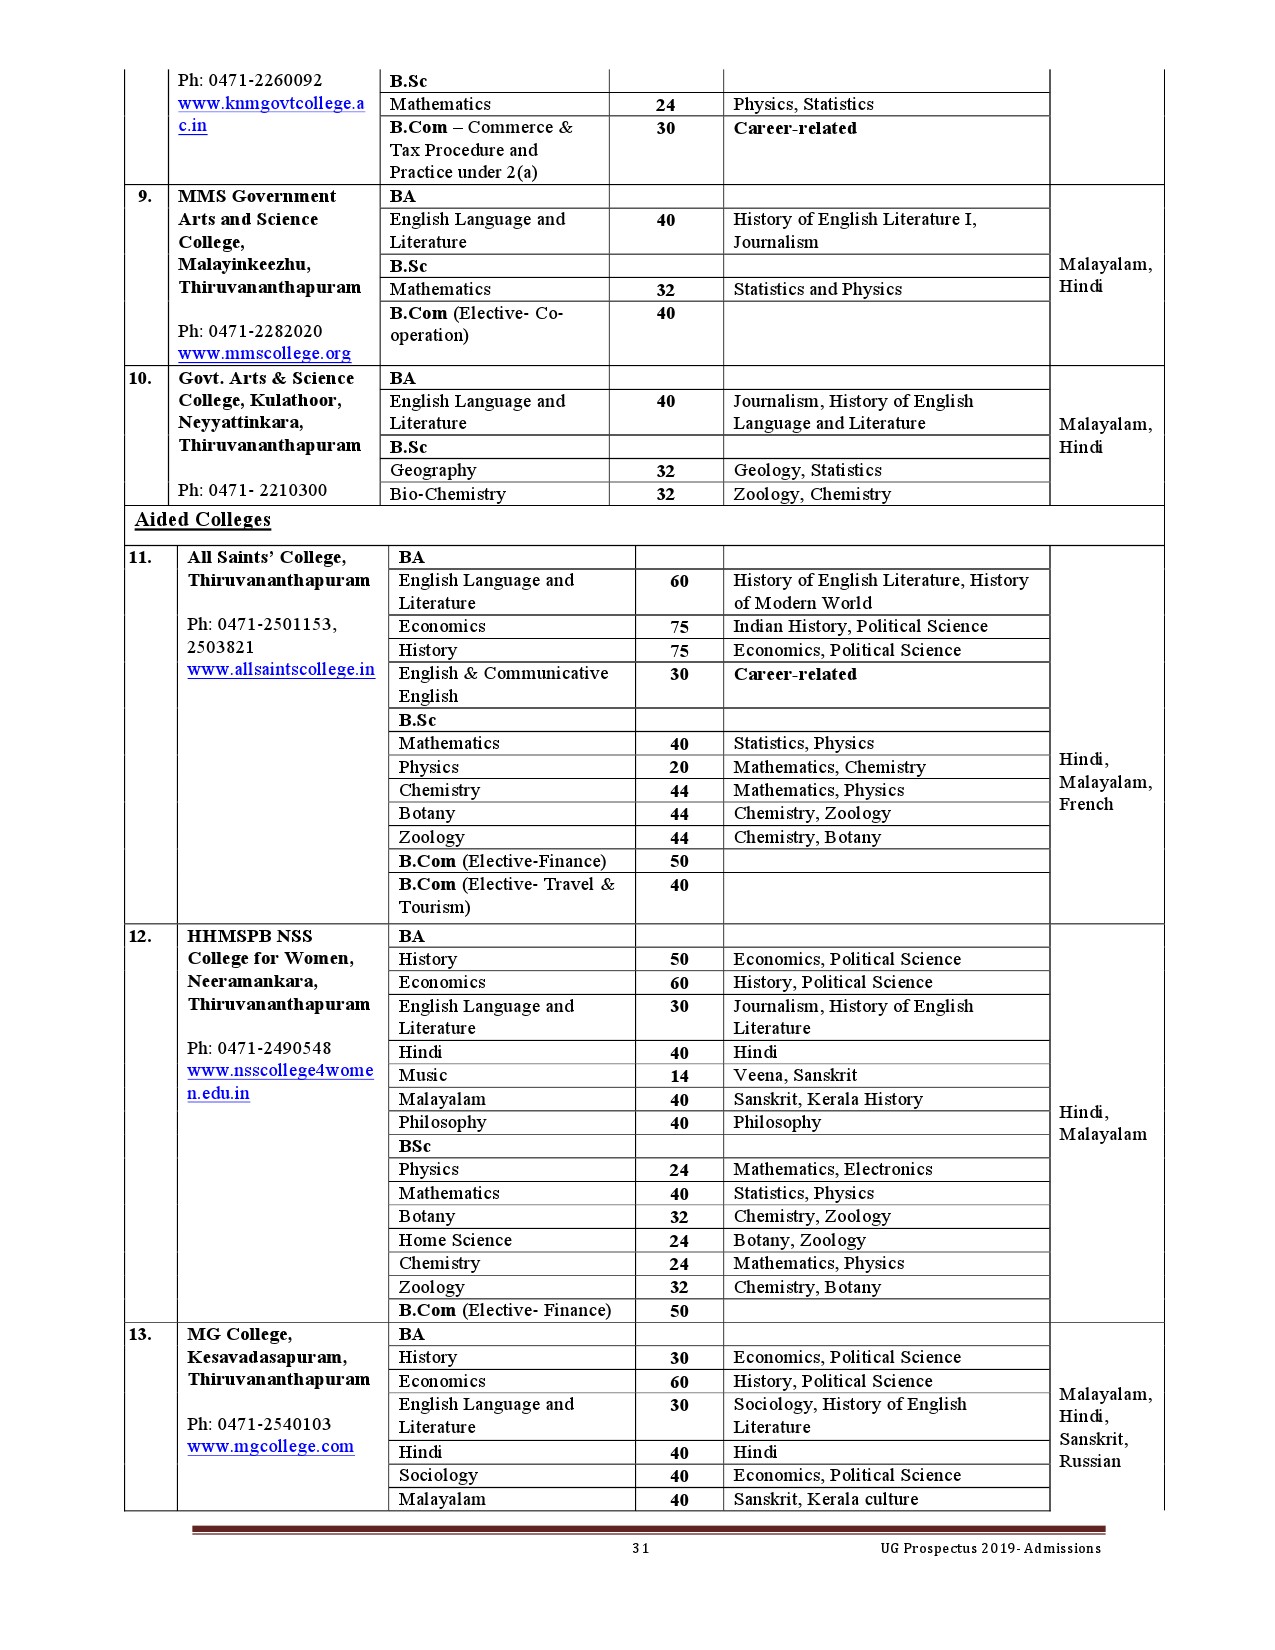 Kerala University UG Admission Prospectus 2019 - Notification Image 31